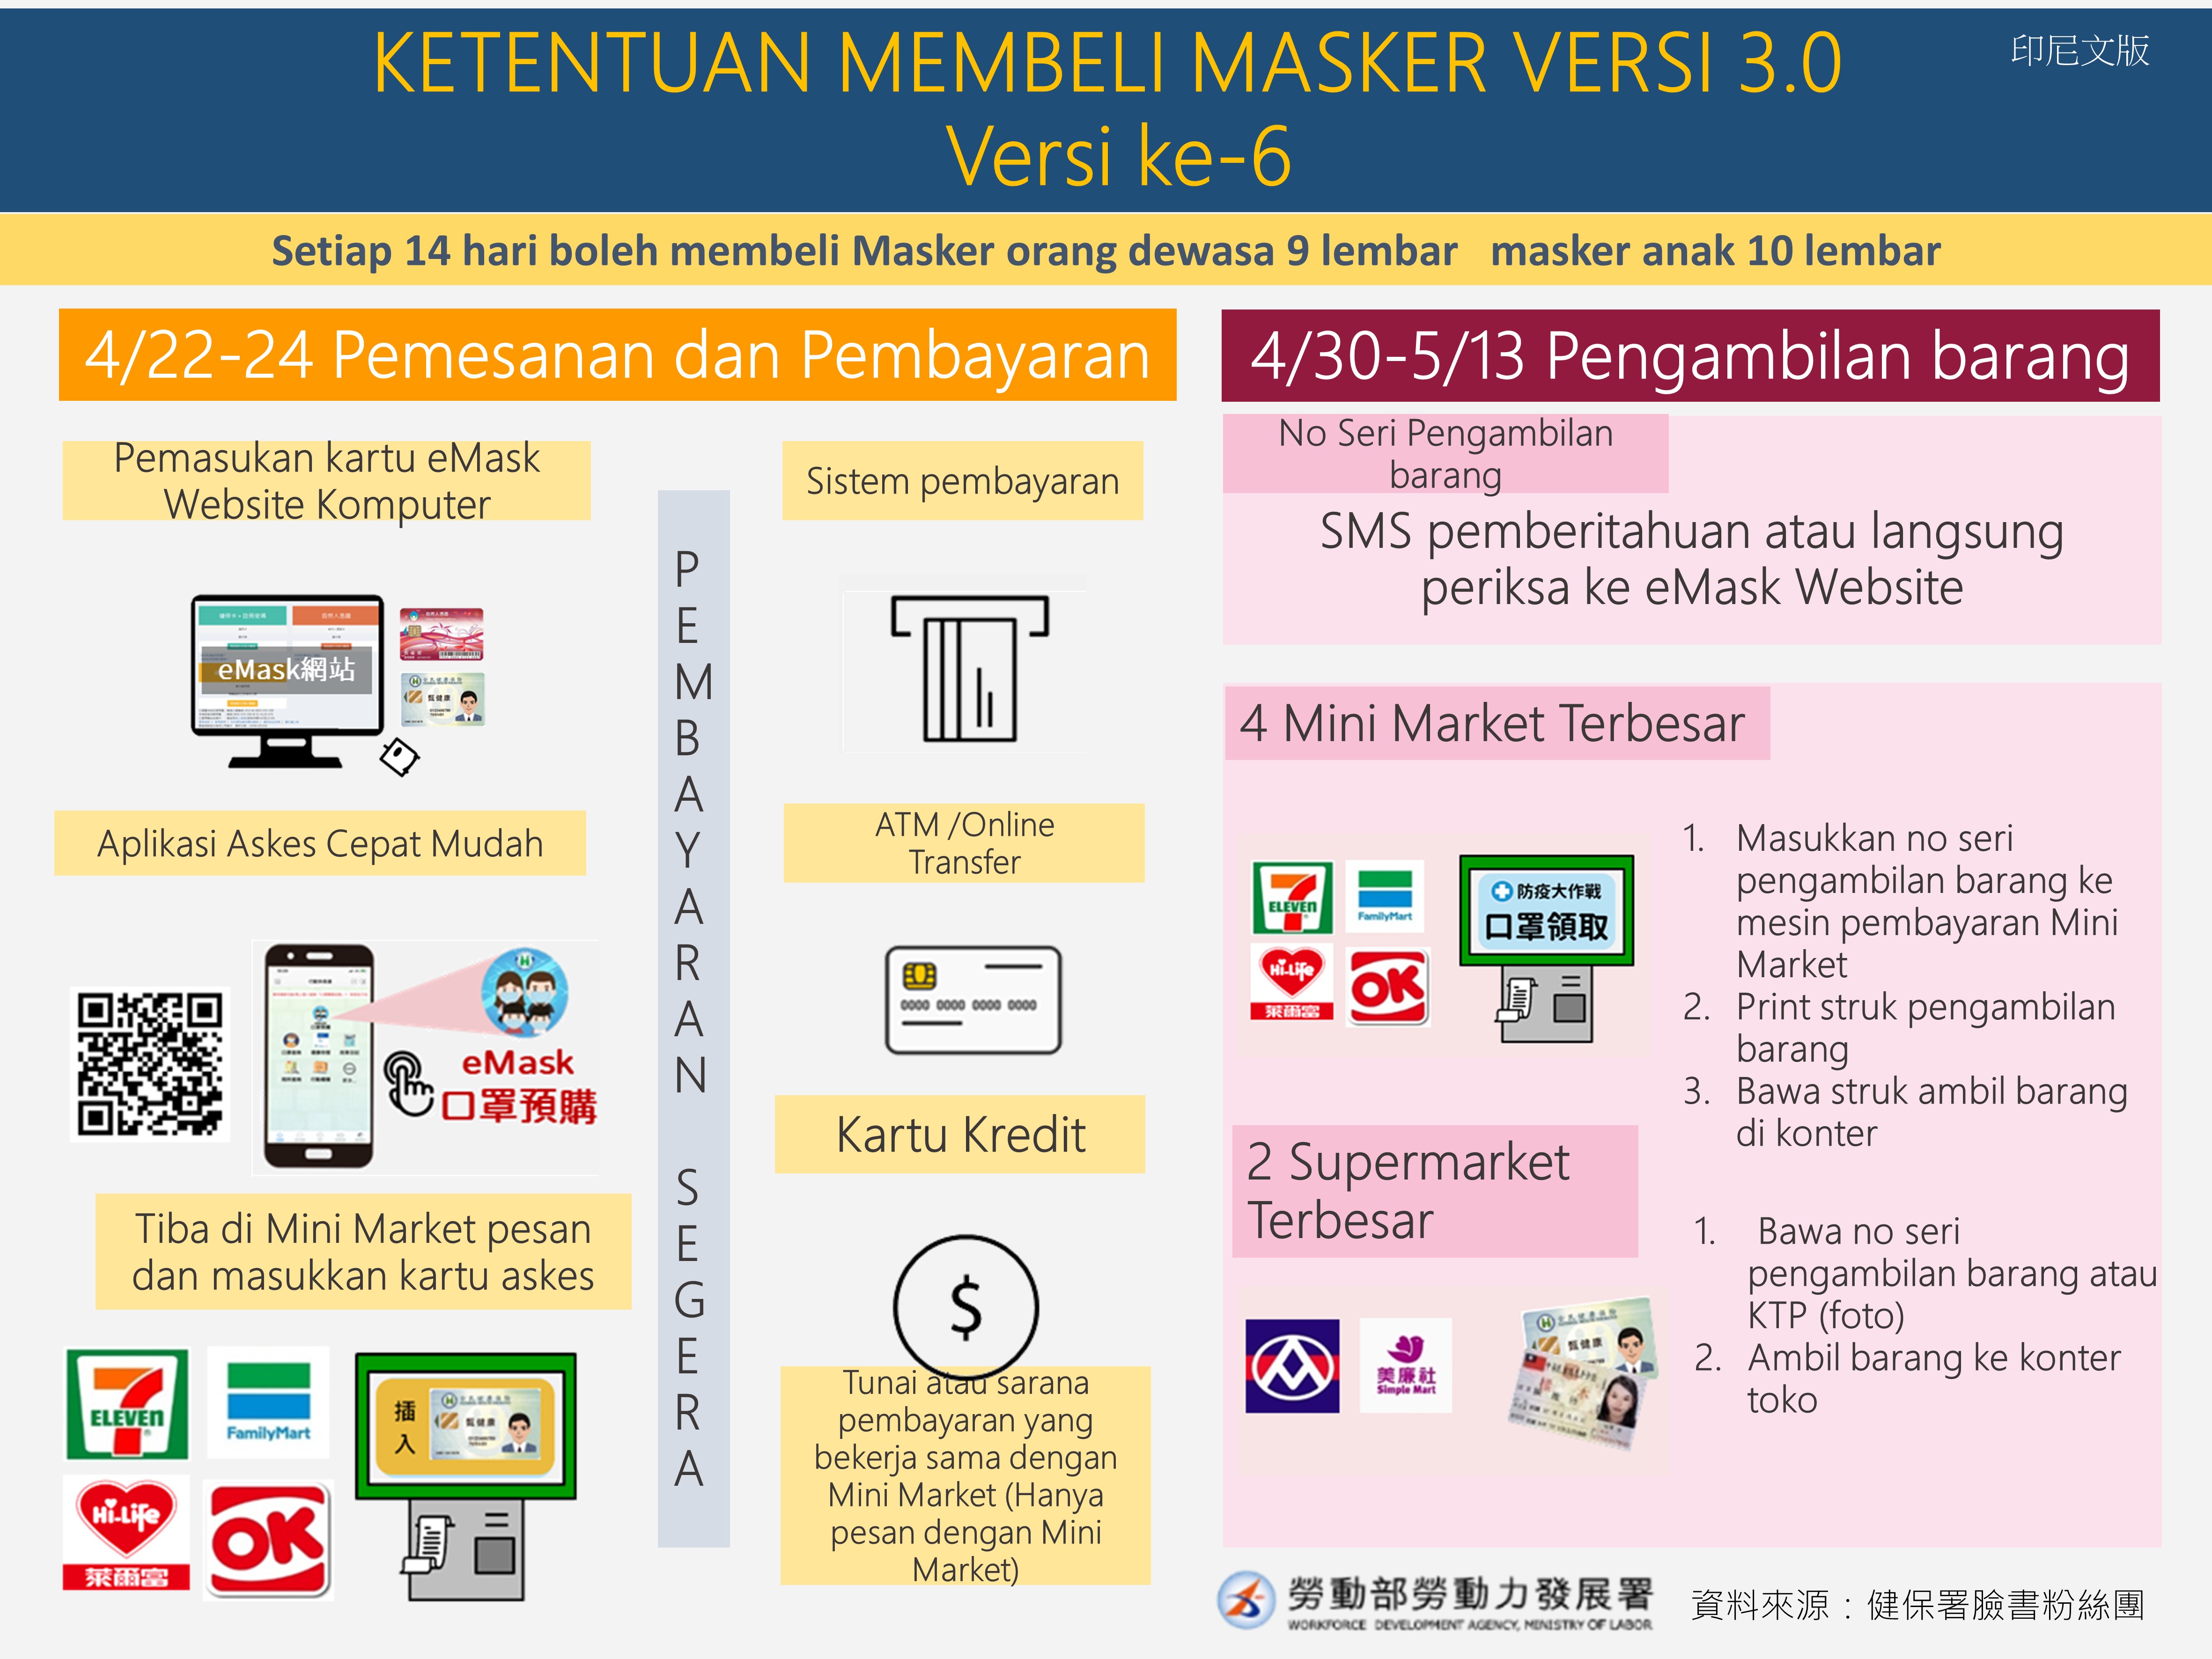 KETENTUAN MEMBELI MASKER VERSI 3.0  Versi ke-6-印尼文.JPG